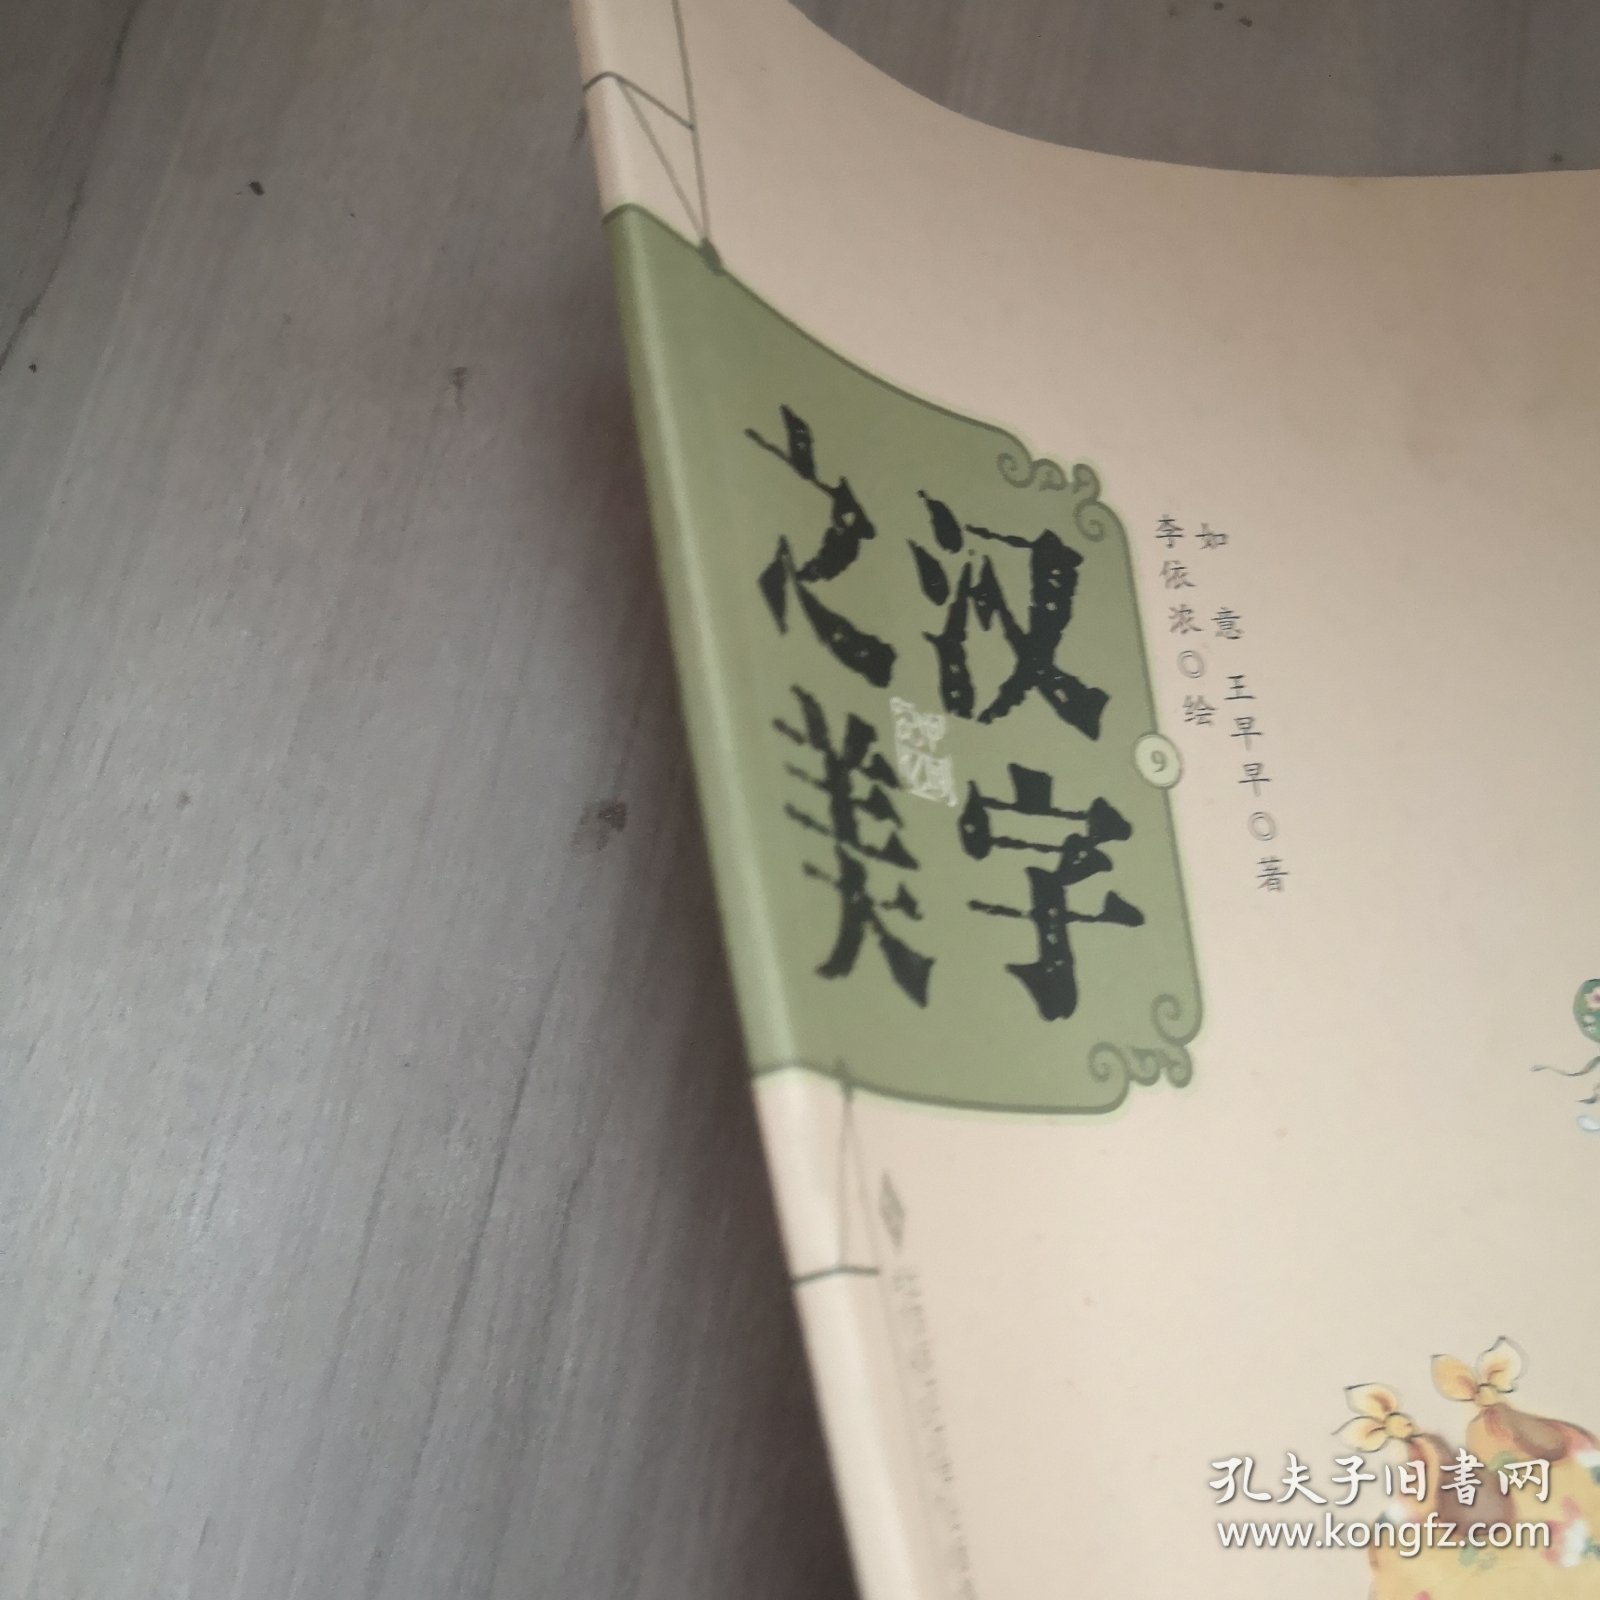 中国记忆·汉字之美 象形字二级:布袋爷爷